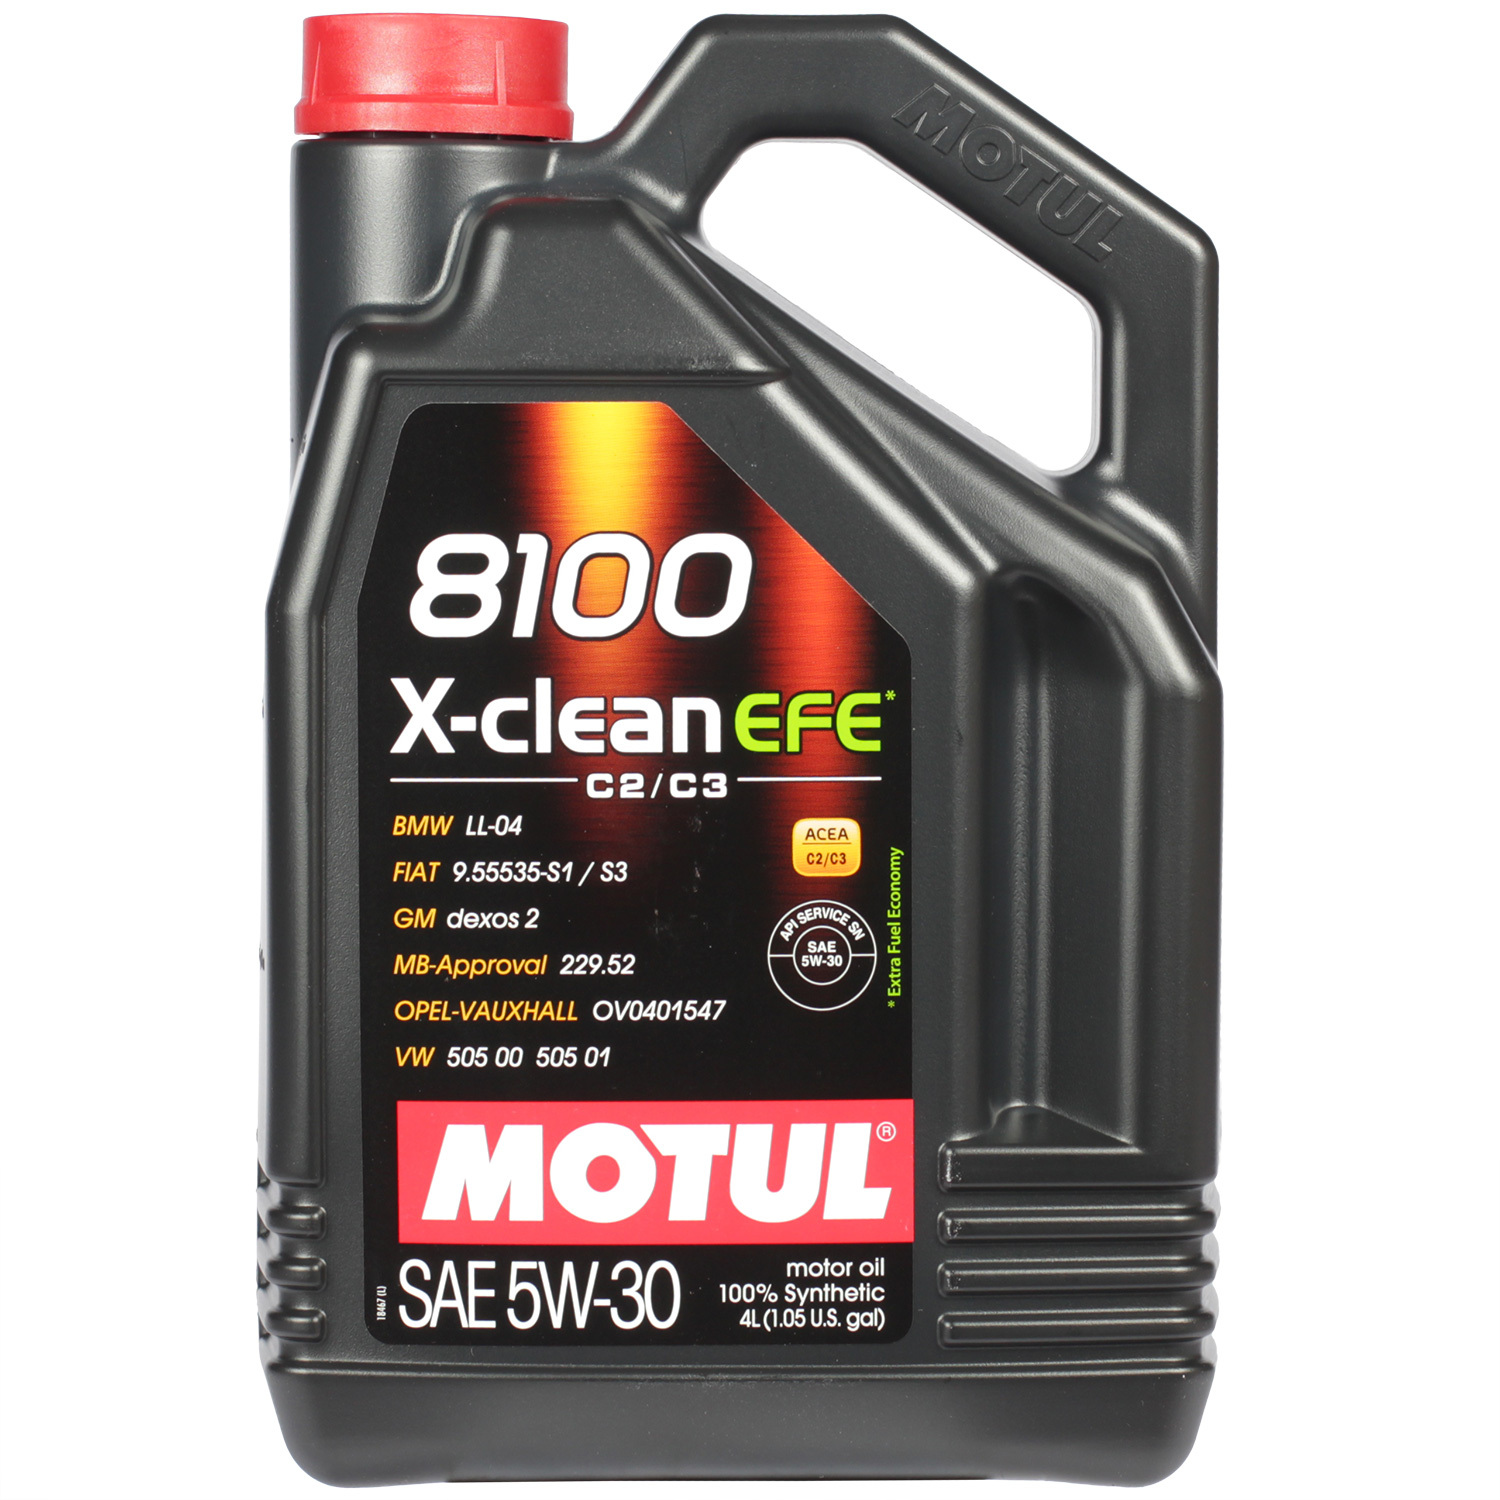 Motul Моторное масло Motul 8100 X-clean EFE 5W-30, 4 л